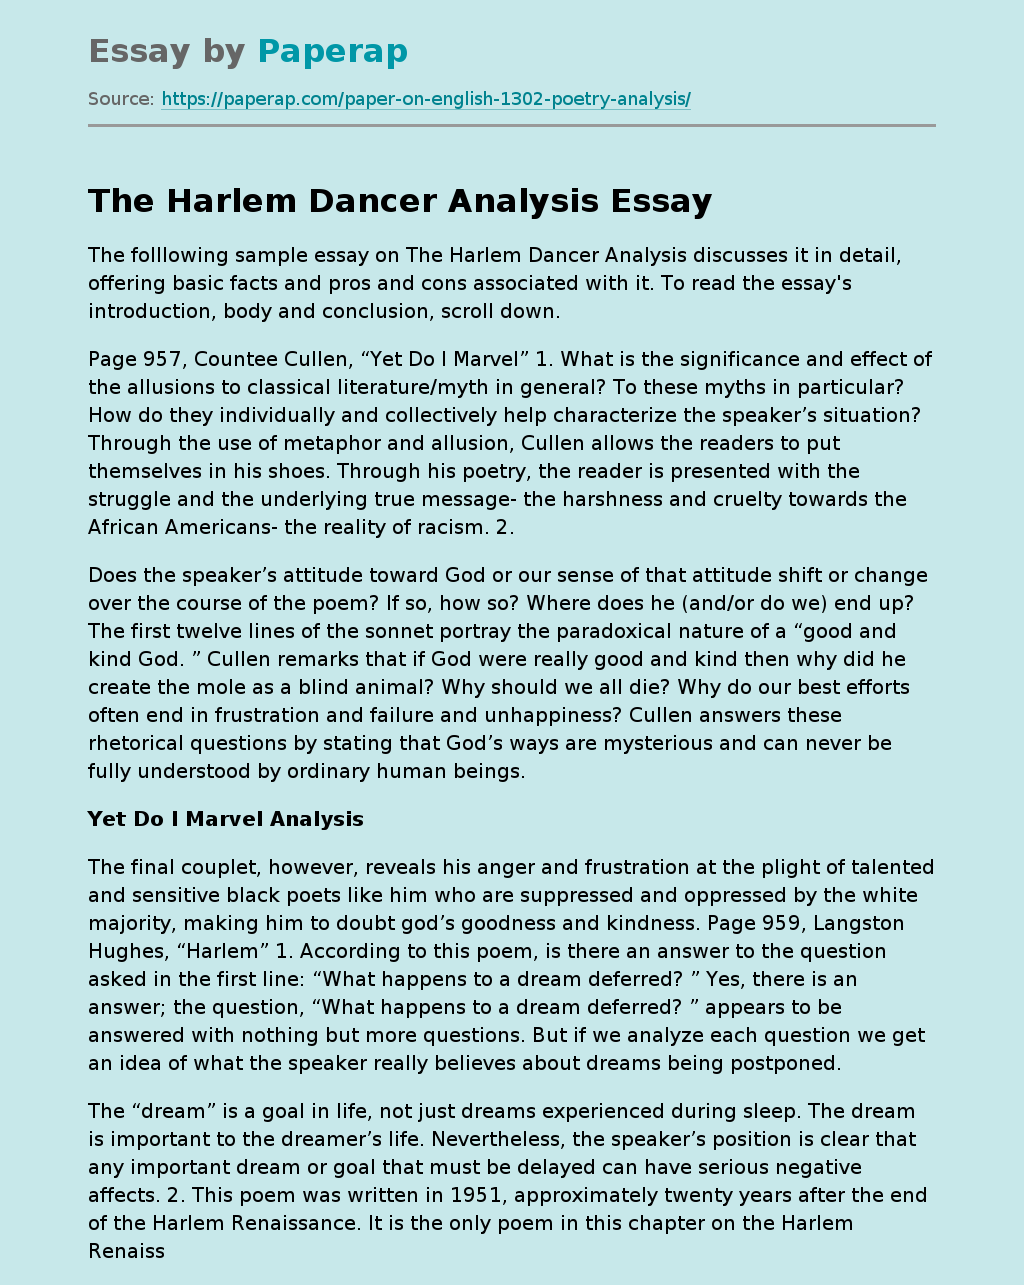 The Harlem Dancer Analysis